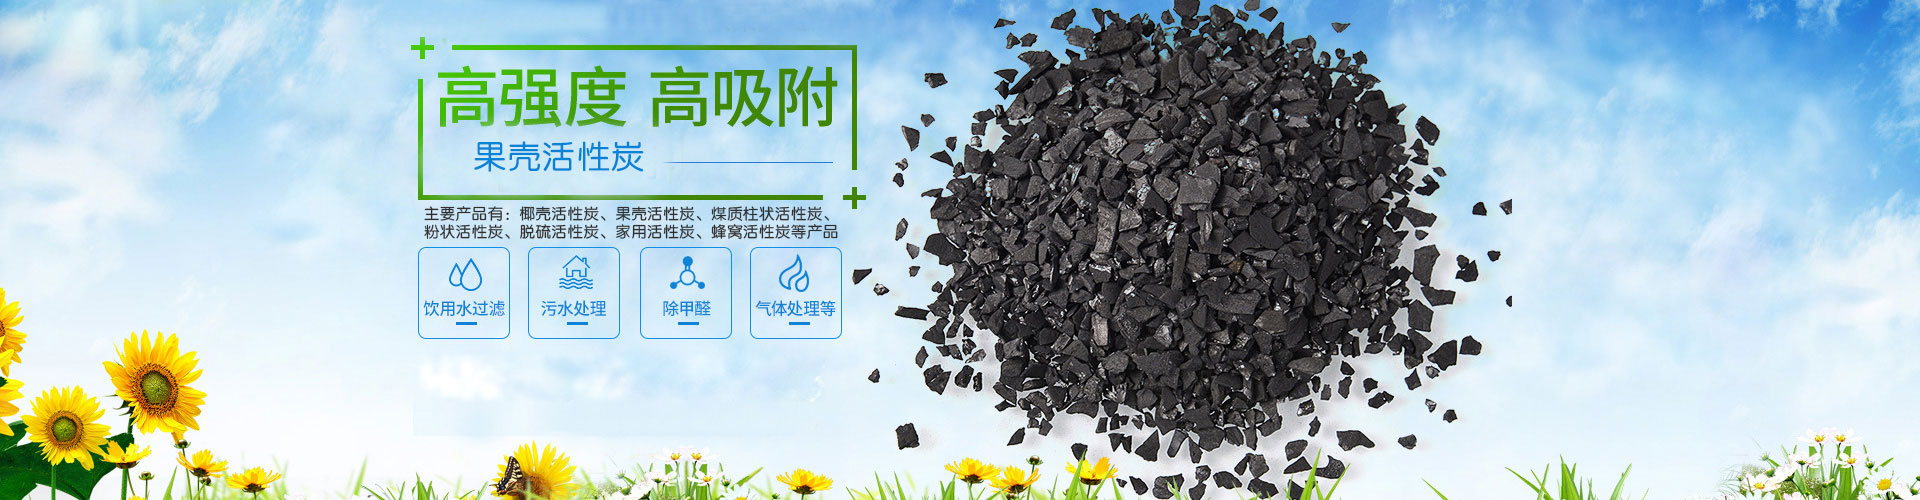 煤质柱状活性炭|北京污水处理柱状活性炭厂家|免费拿样品